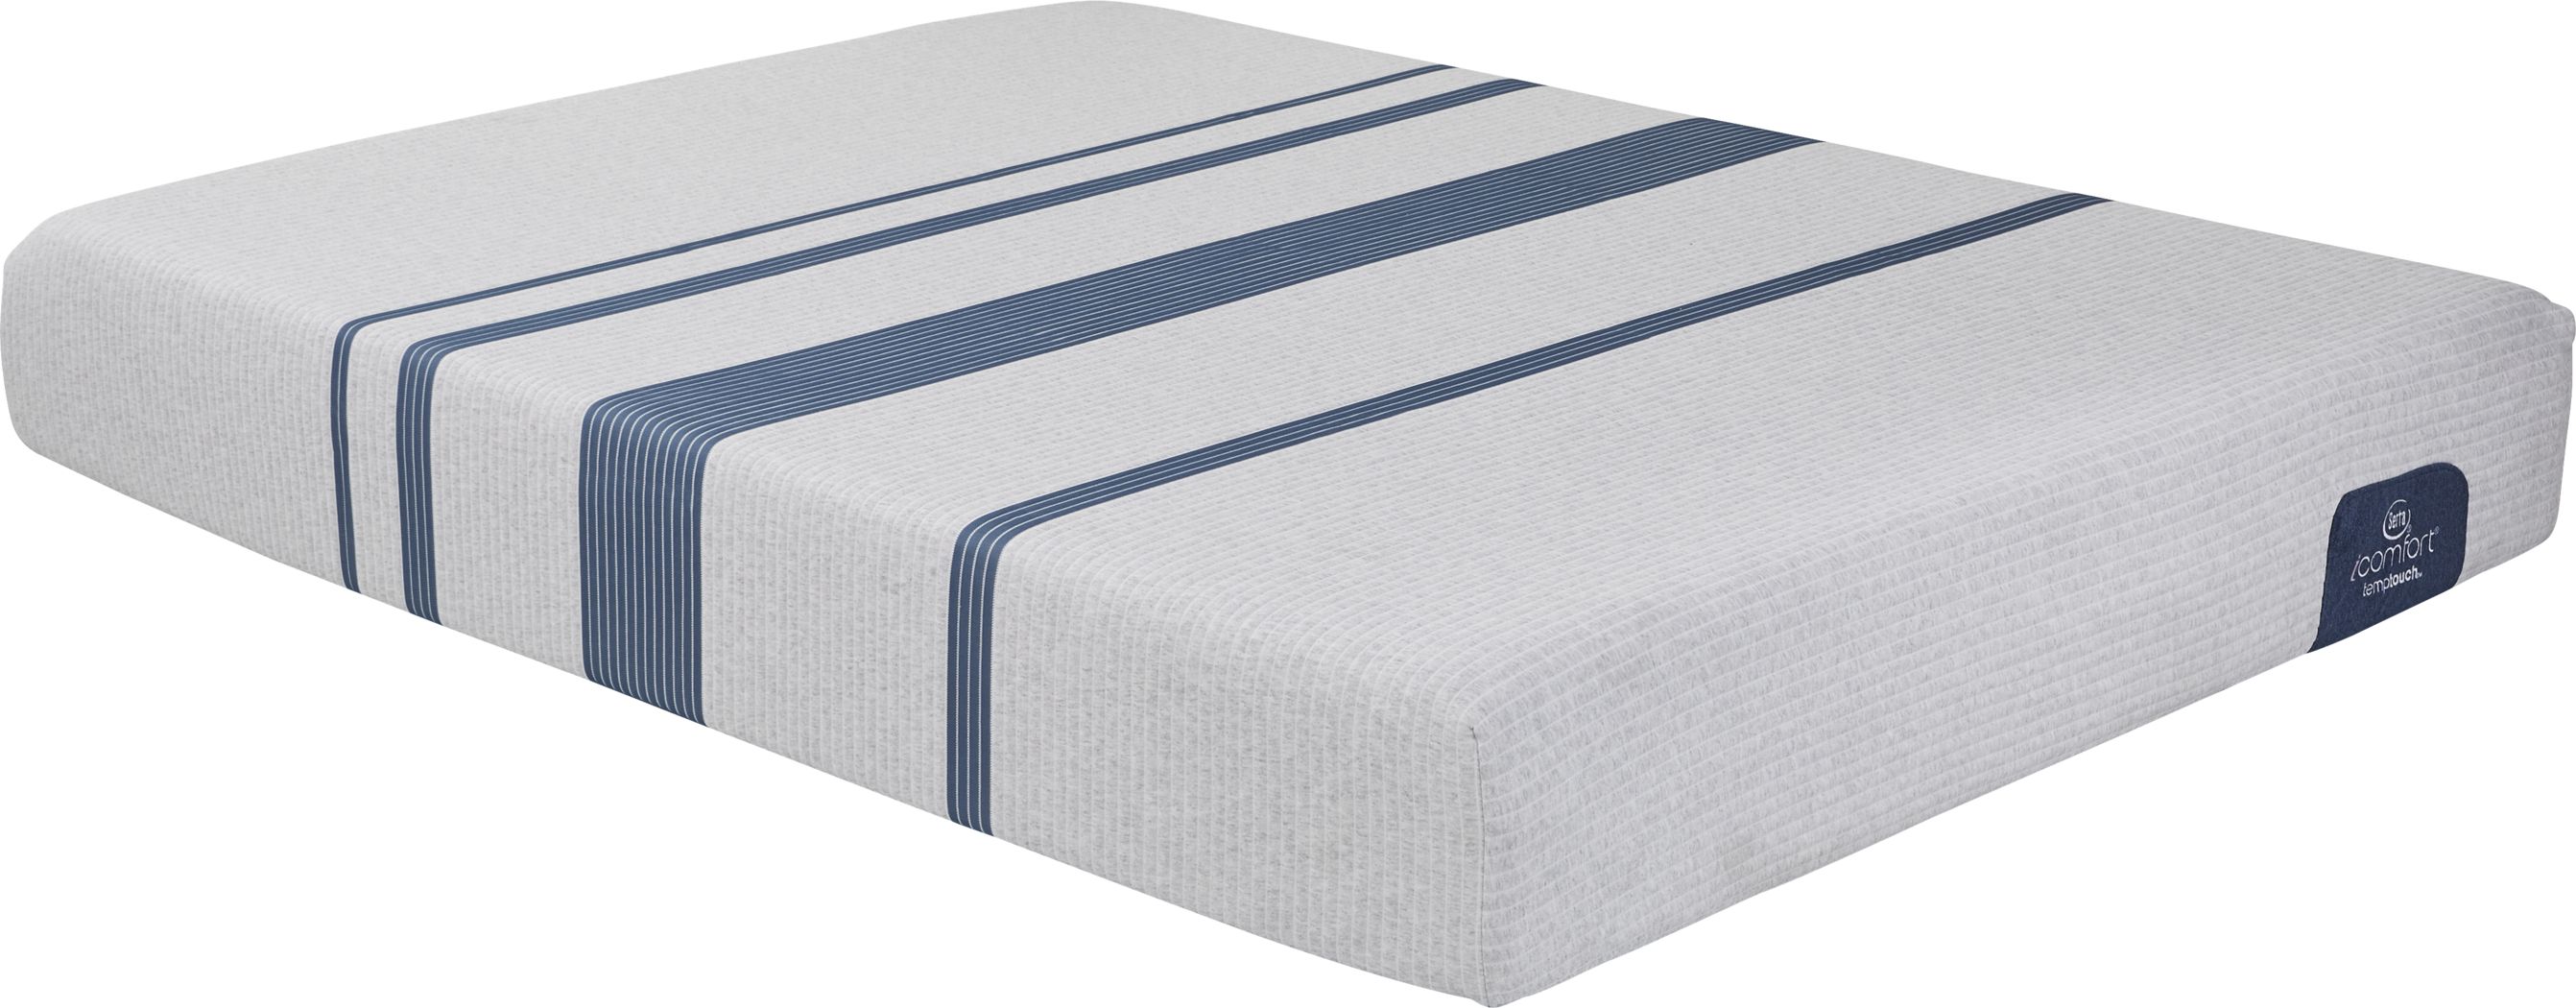 blue 100 queen mattress